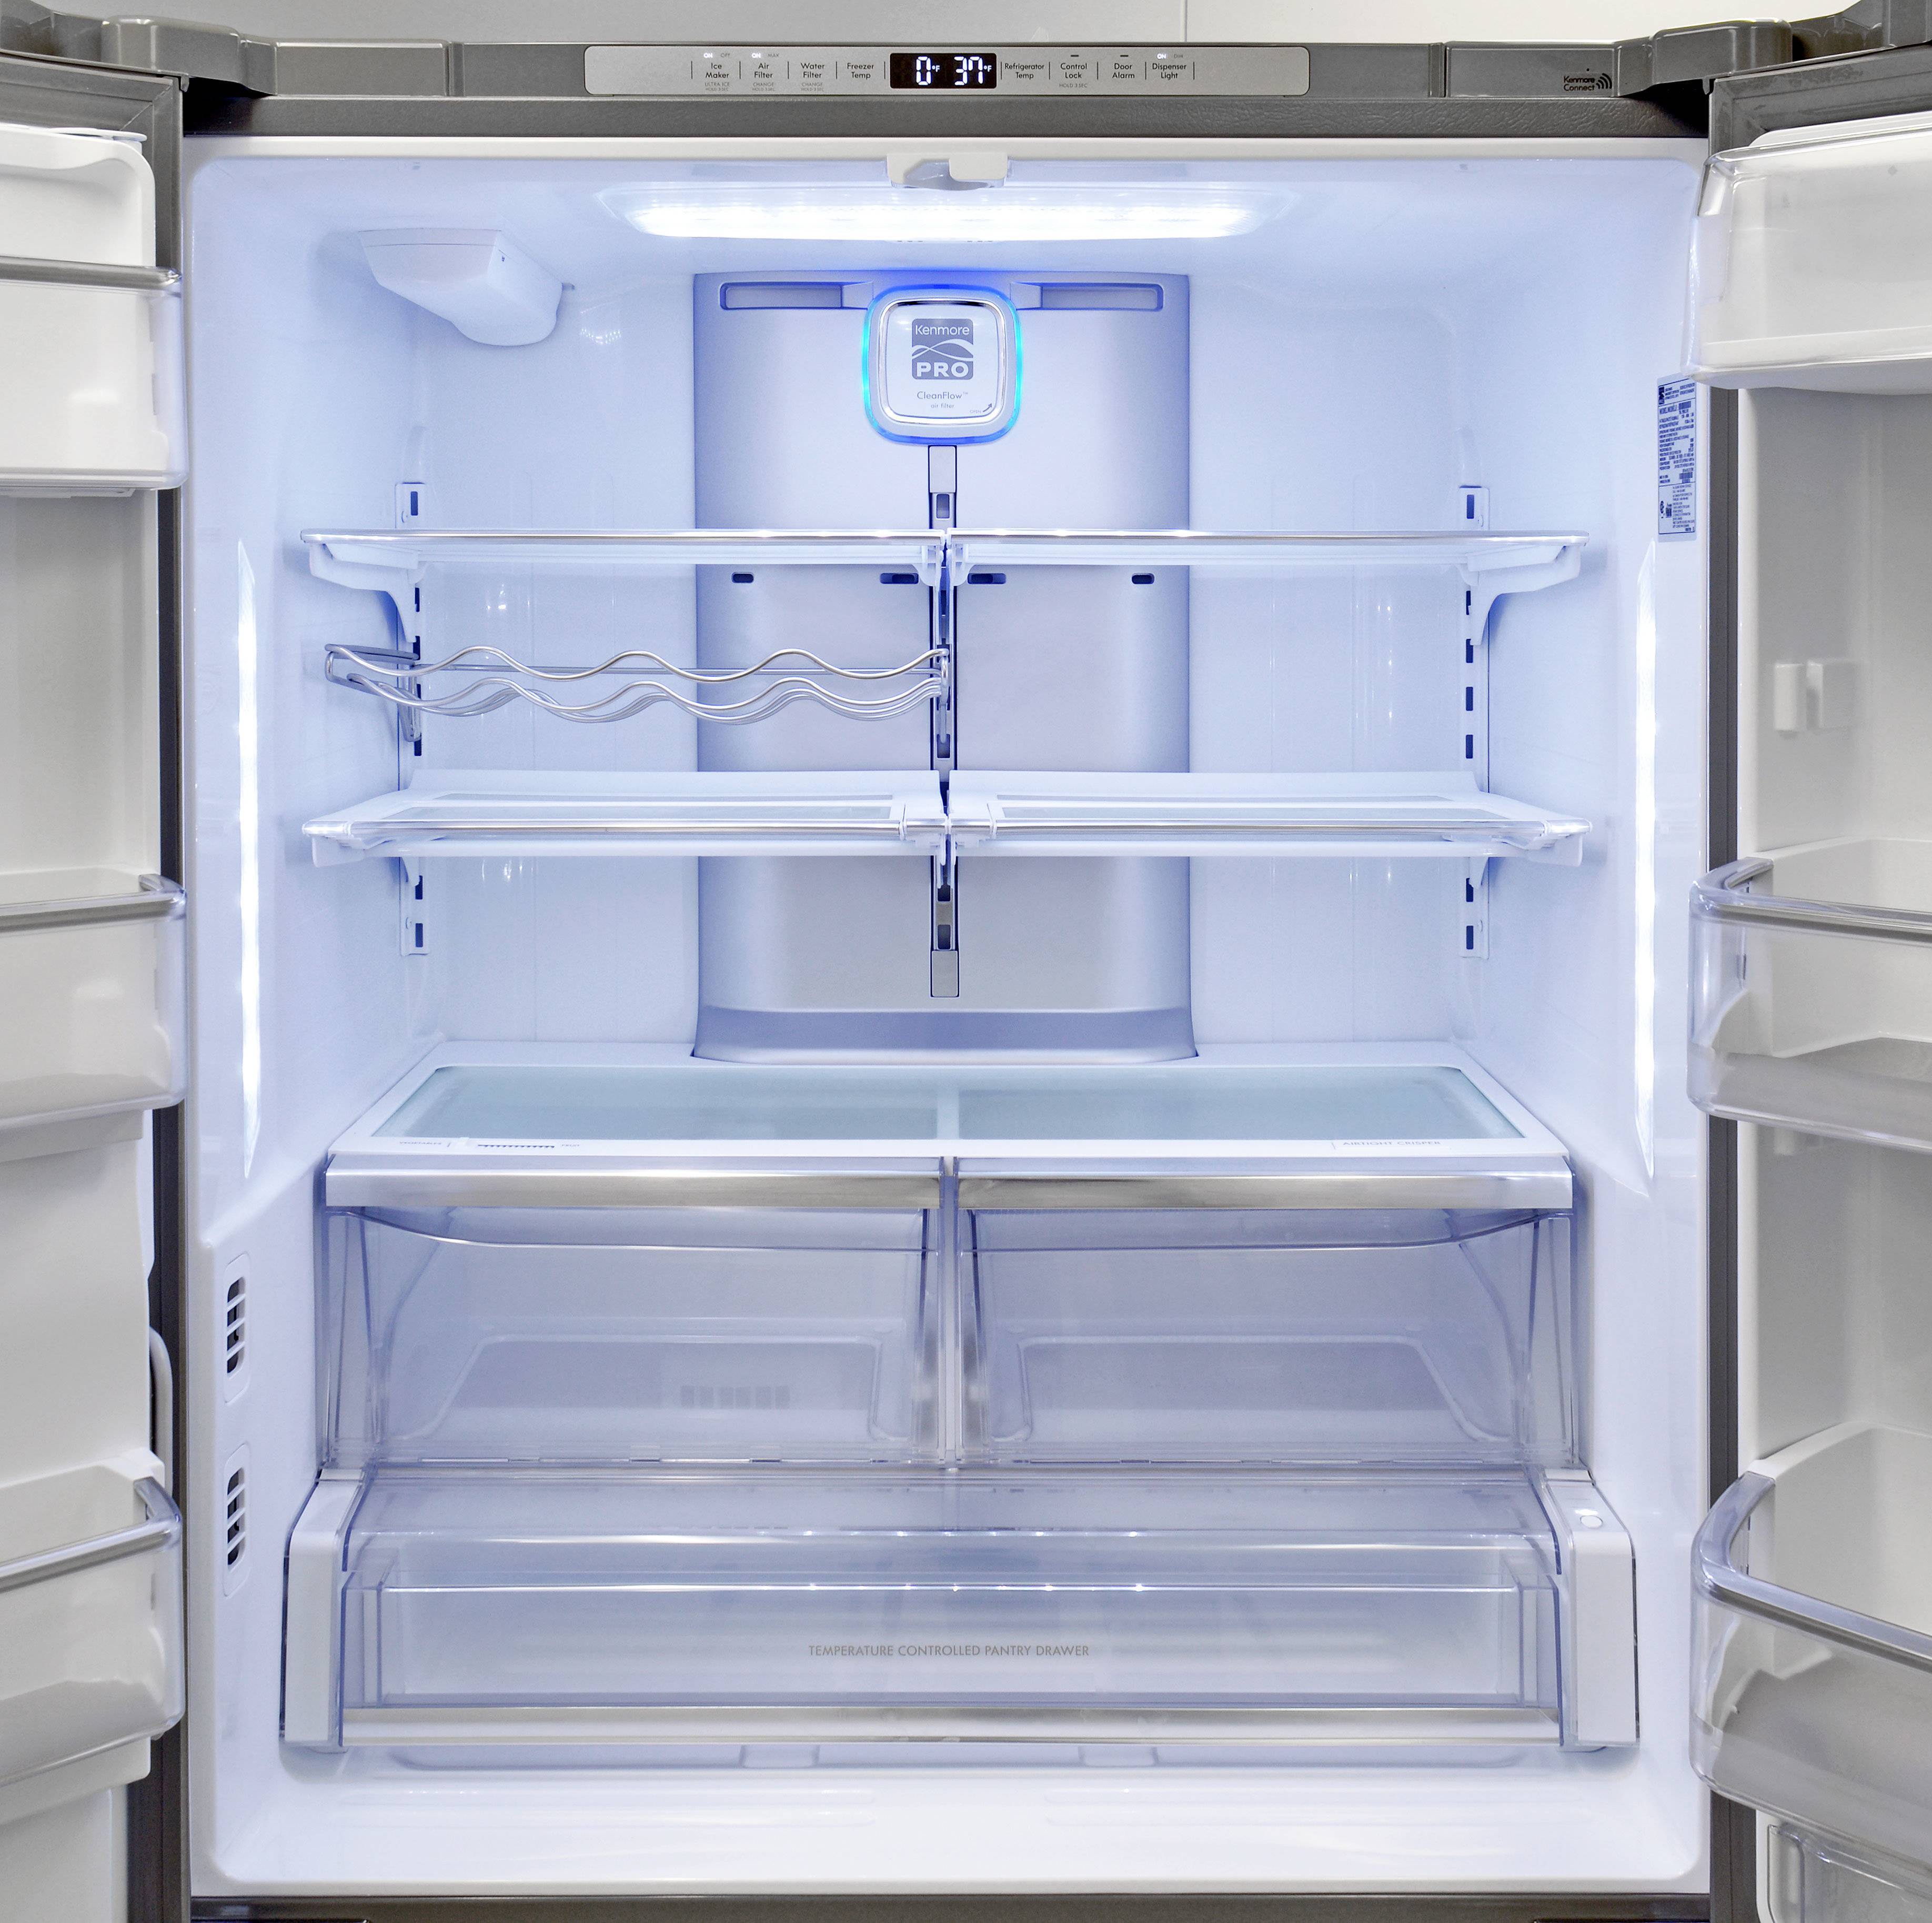 Неисправности холодильника вирпул - самые частые поломки и методы их устранения